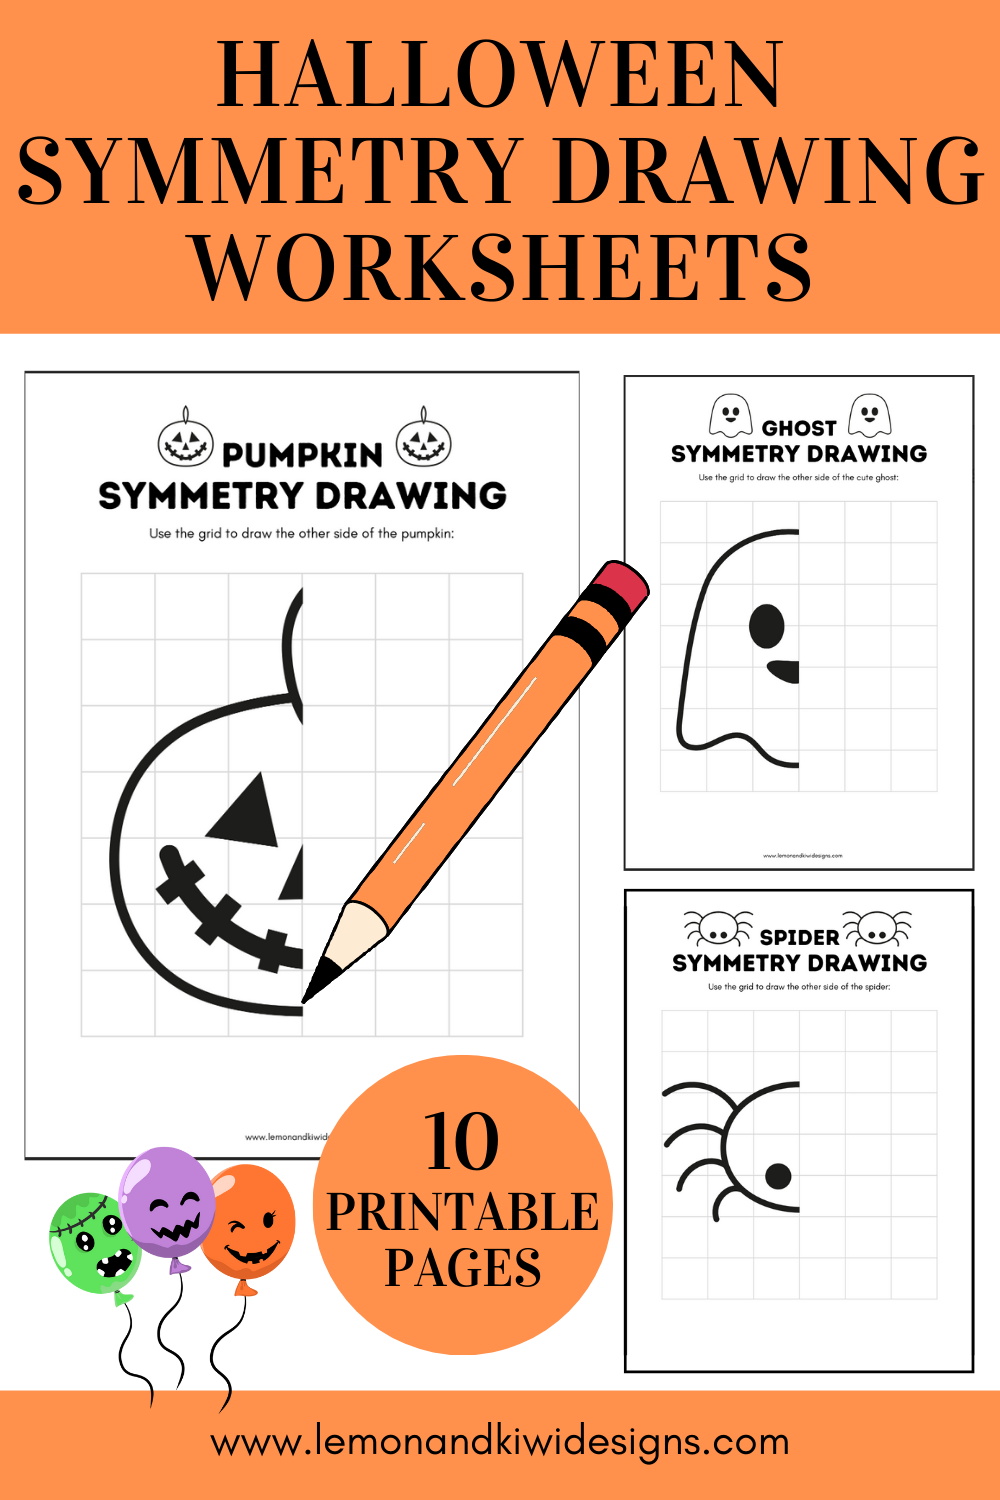 Printable Halloween Symmetry Worksheets